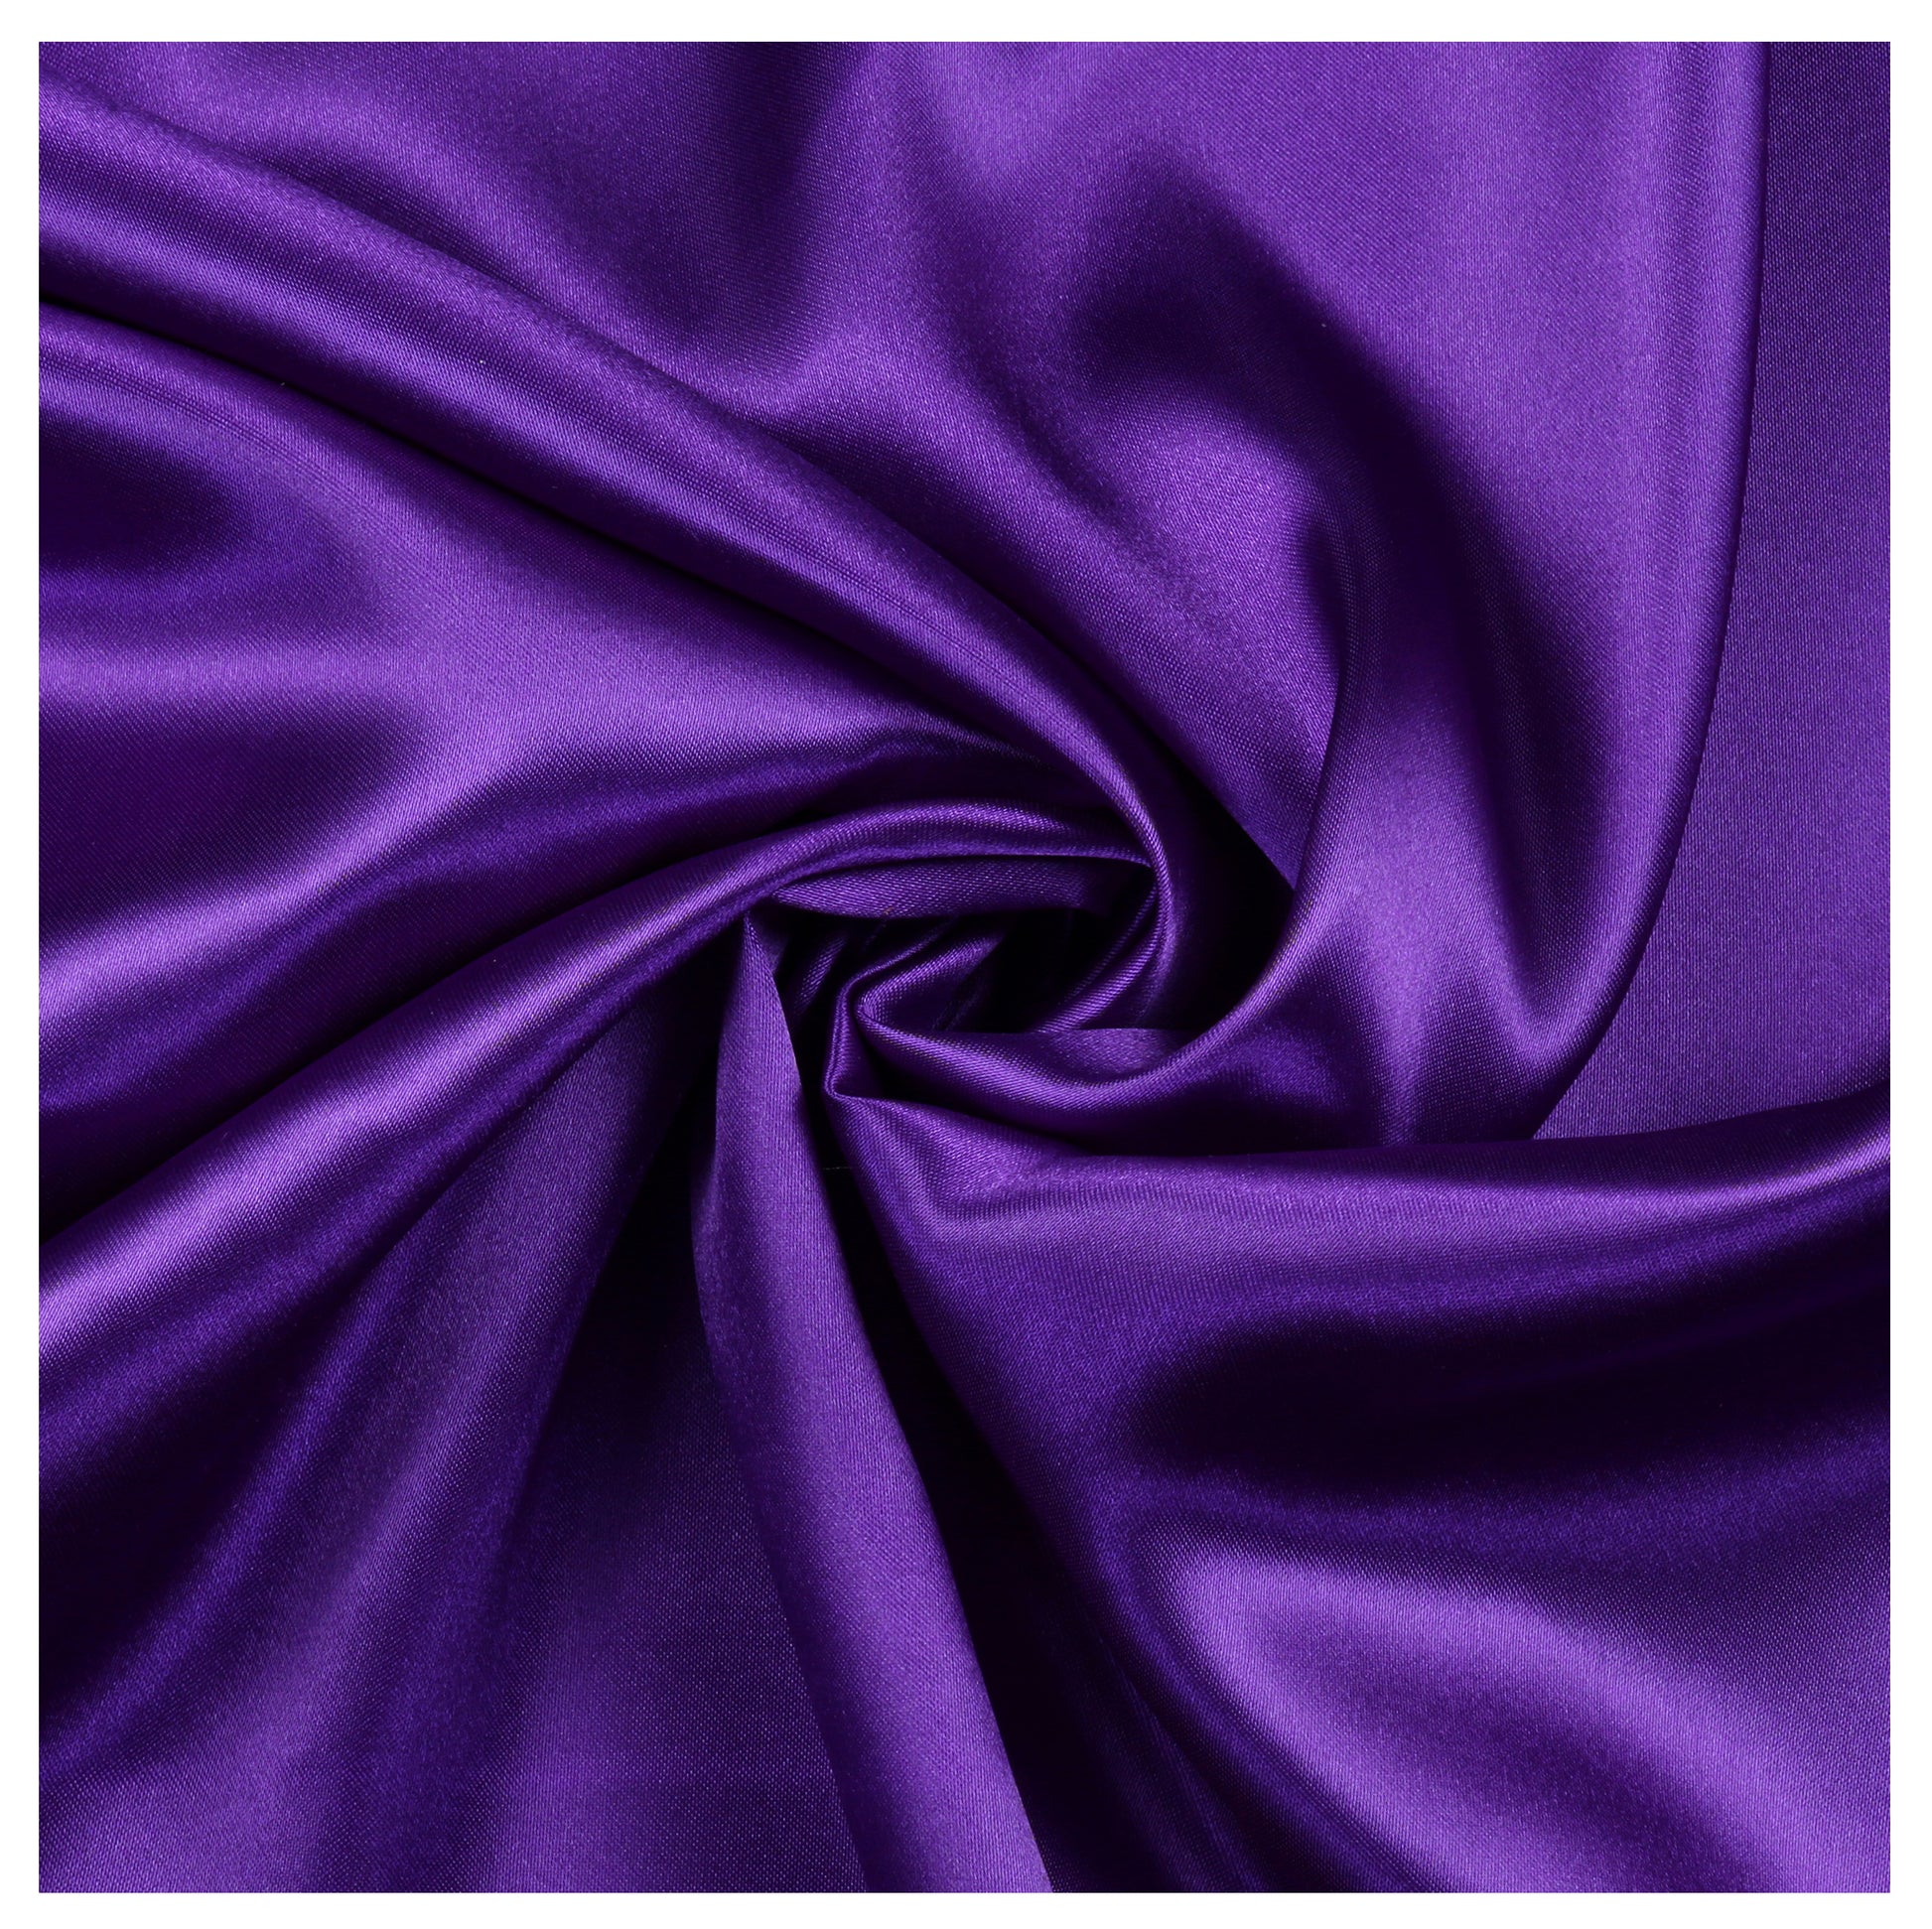 Cadbury Purple,8f12d5f2-4c32-444a-9b64-6ffa982f2c1b